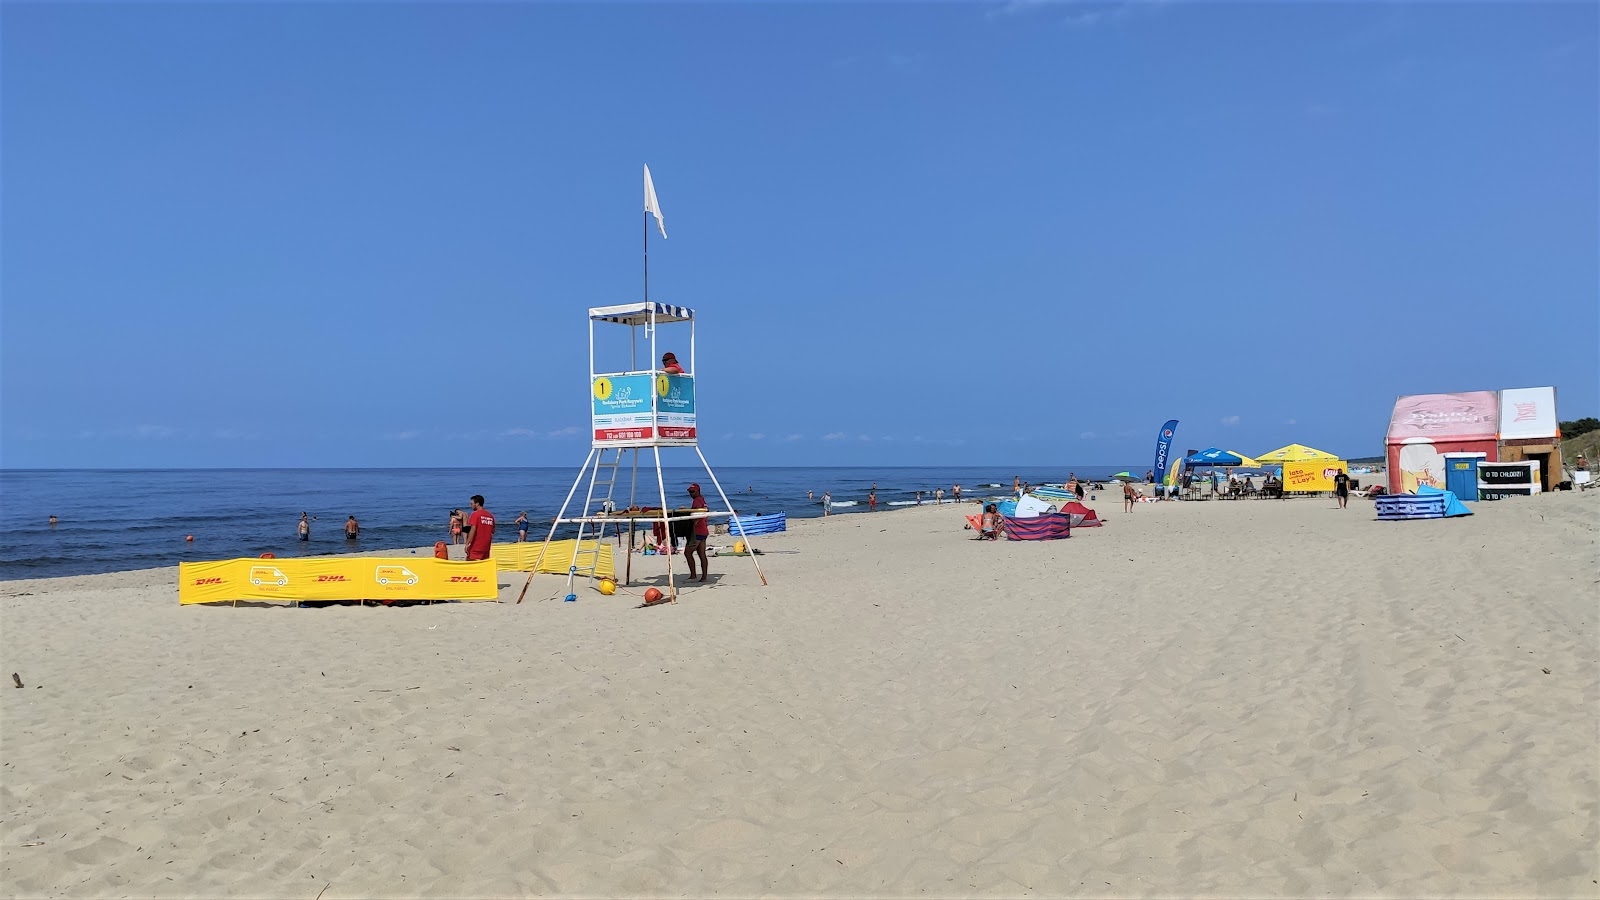 Foto di Piaski Rybacka beach ubicato in zona naturale